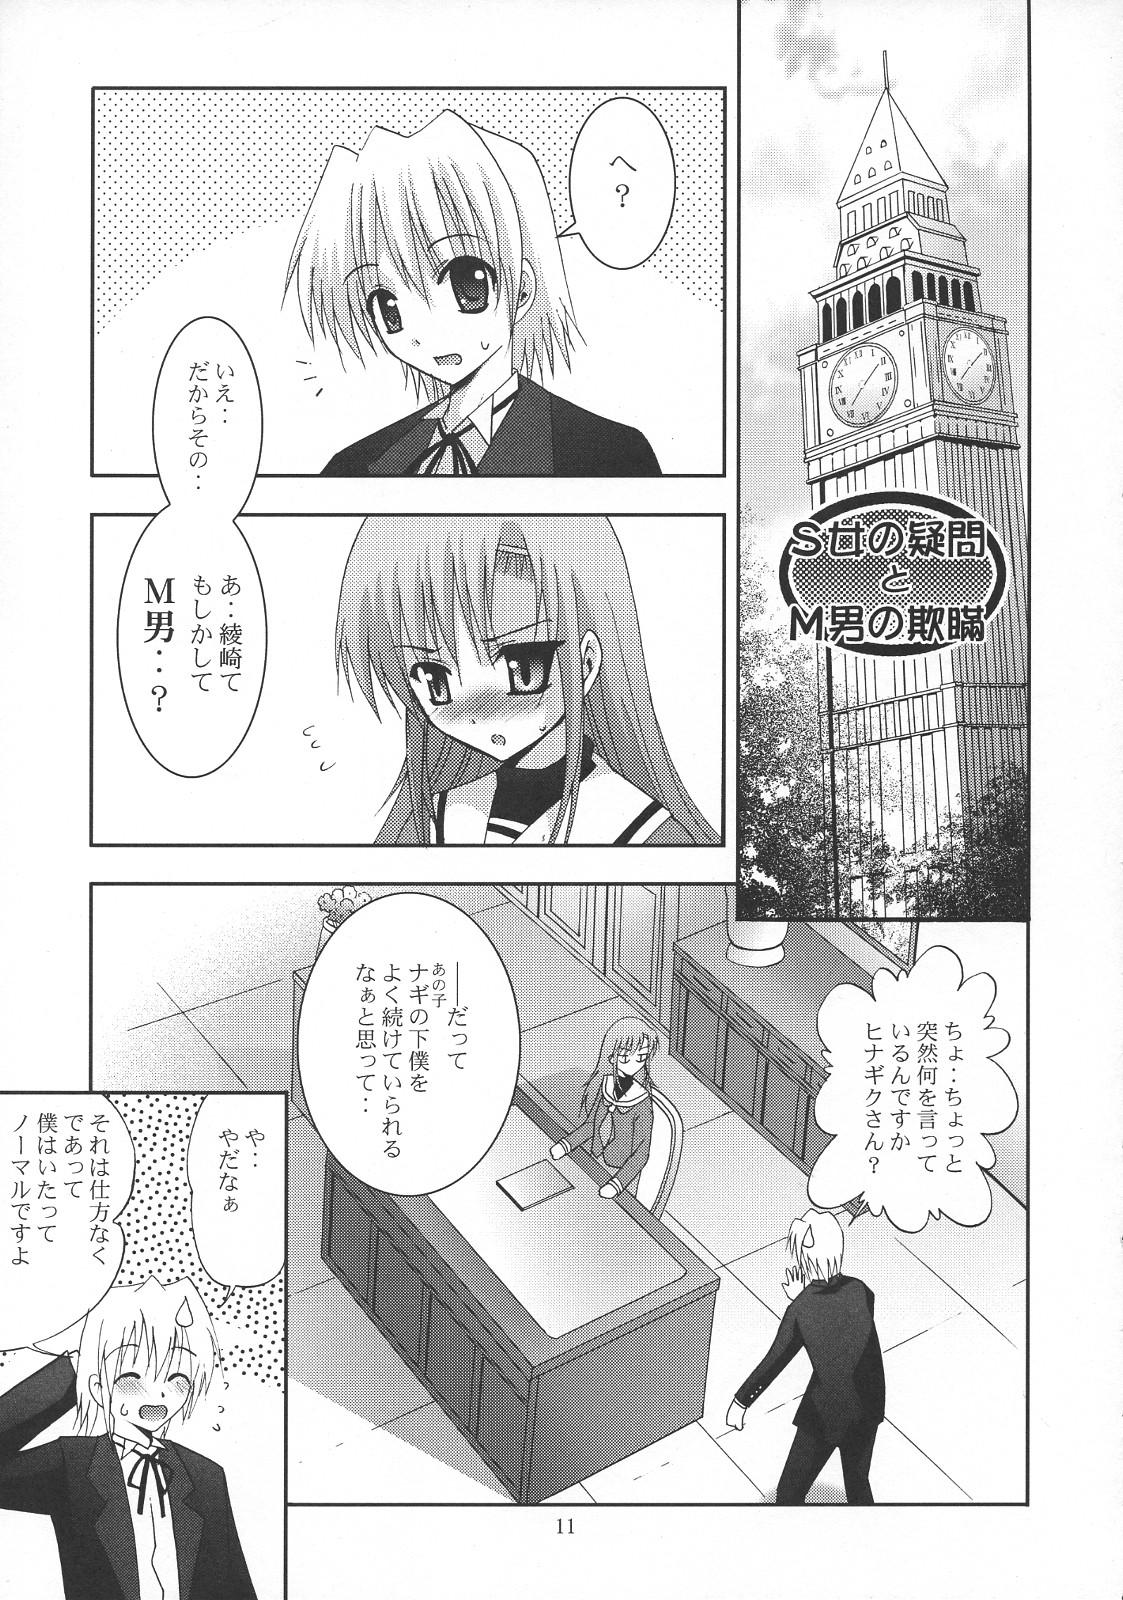 Perfect Butt MOUSOU THEATER 21 - Hayate no gotoku Mallu - Page 10